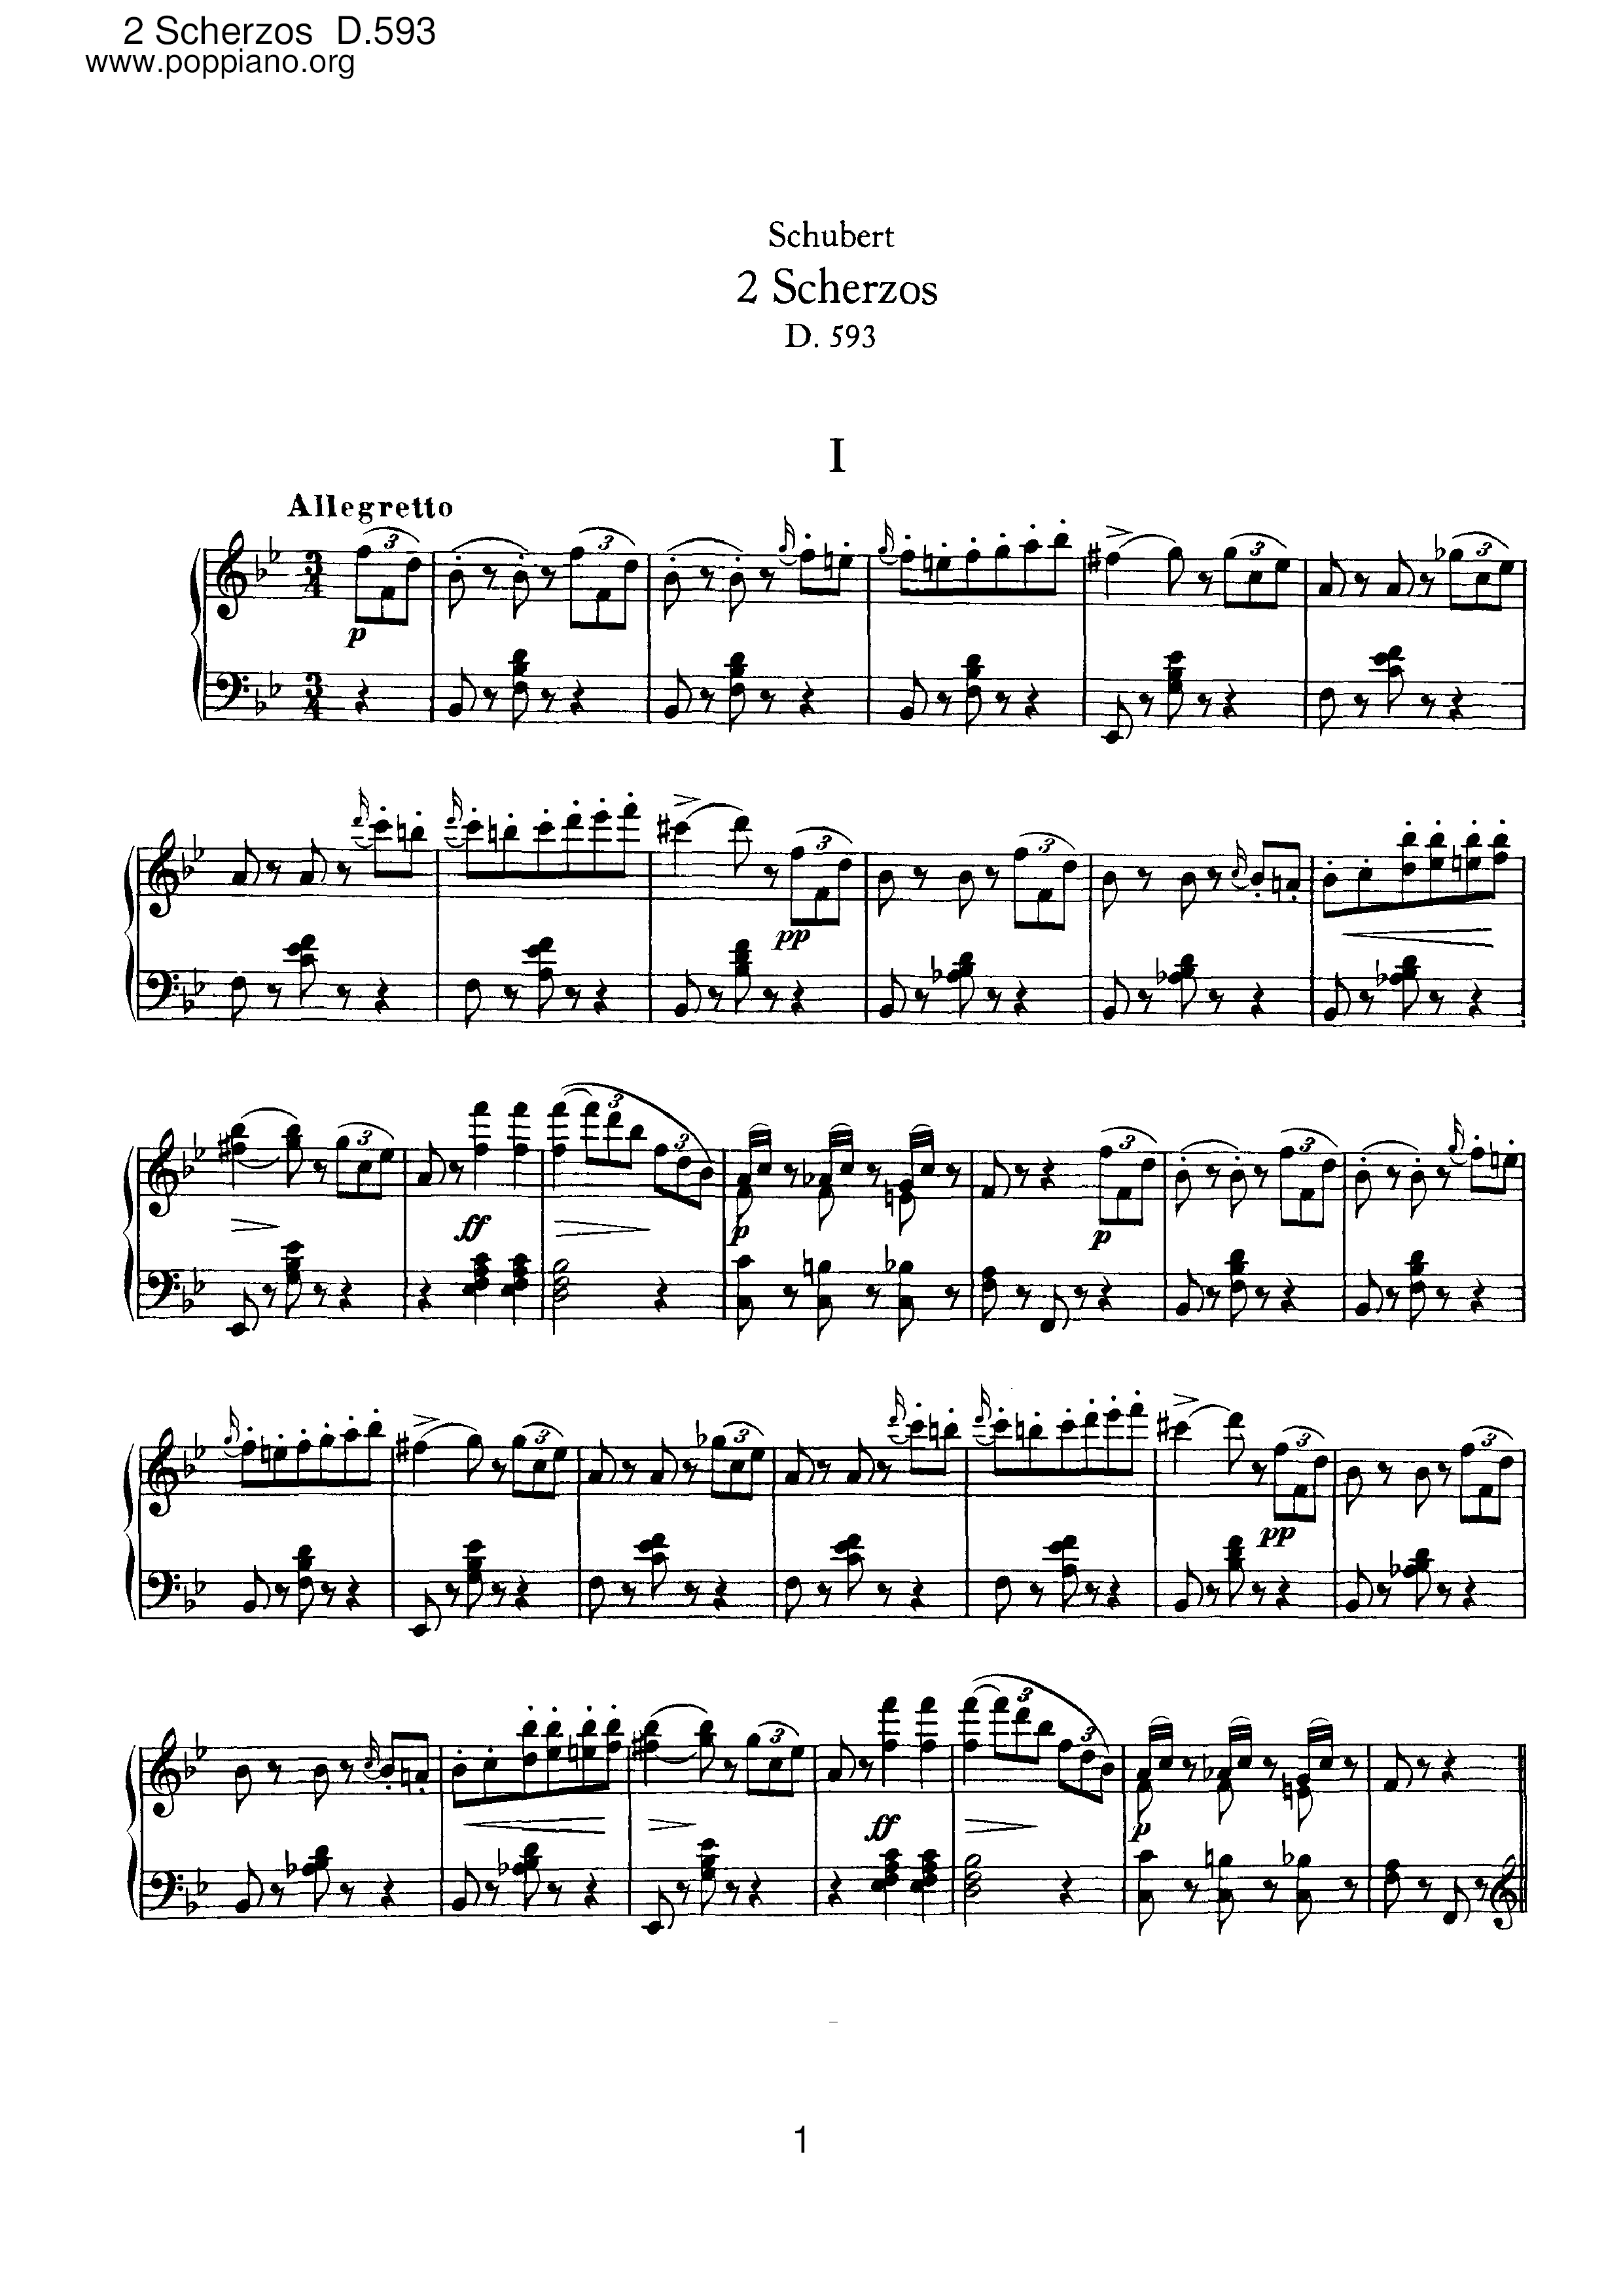 2 Scherzos, D.593ピアノ譜